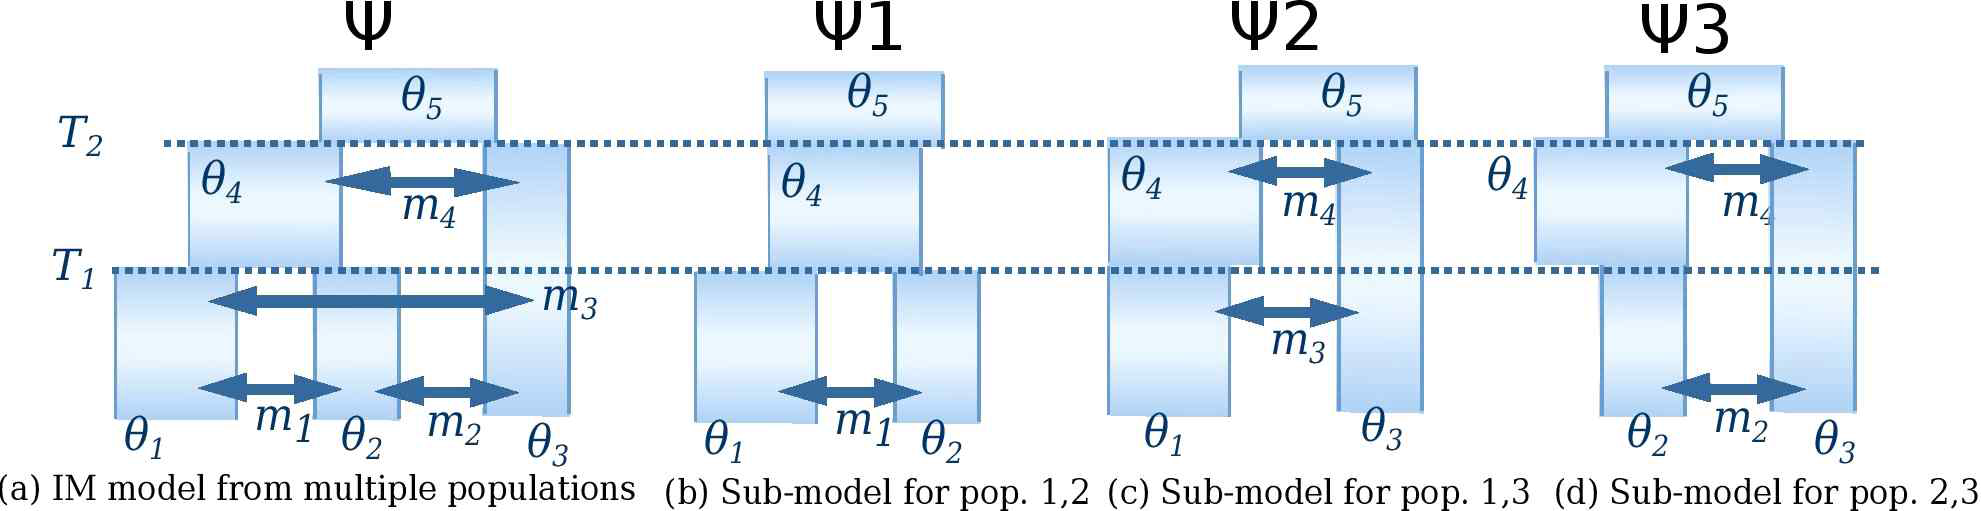 (a) 집단 세 개에 대한 IM 모형. 총 12개의 모수를 가지고 있다. (b) 집단 1과 2에 대한 모형 (a)의 부모형(sub-model). (c)-(d) 다른 쌍의 집단 대한 부모형